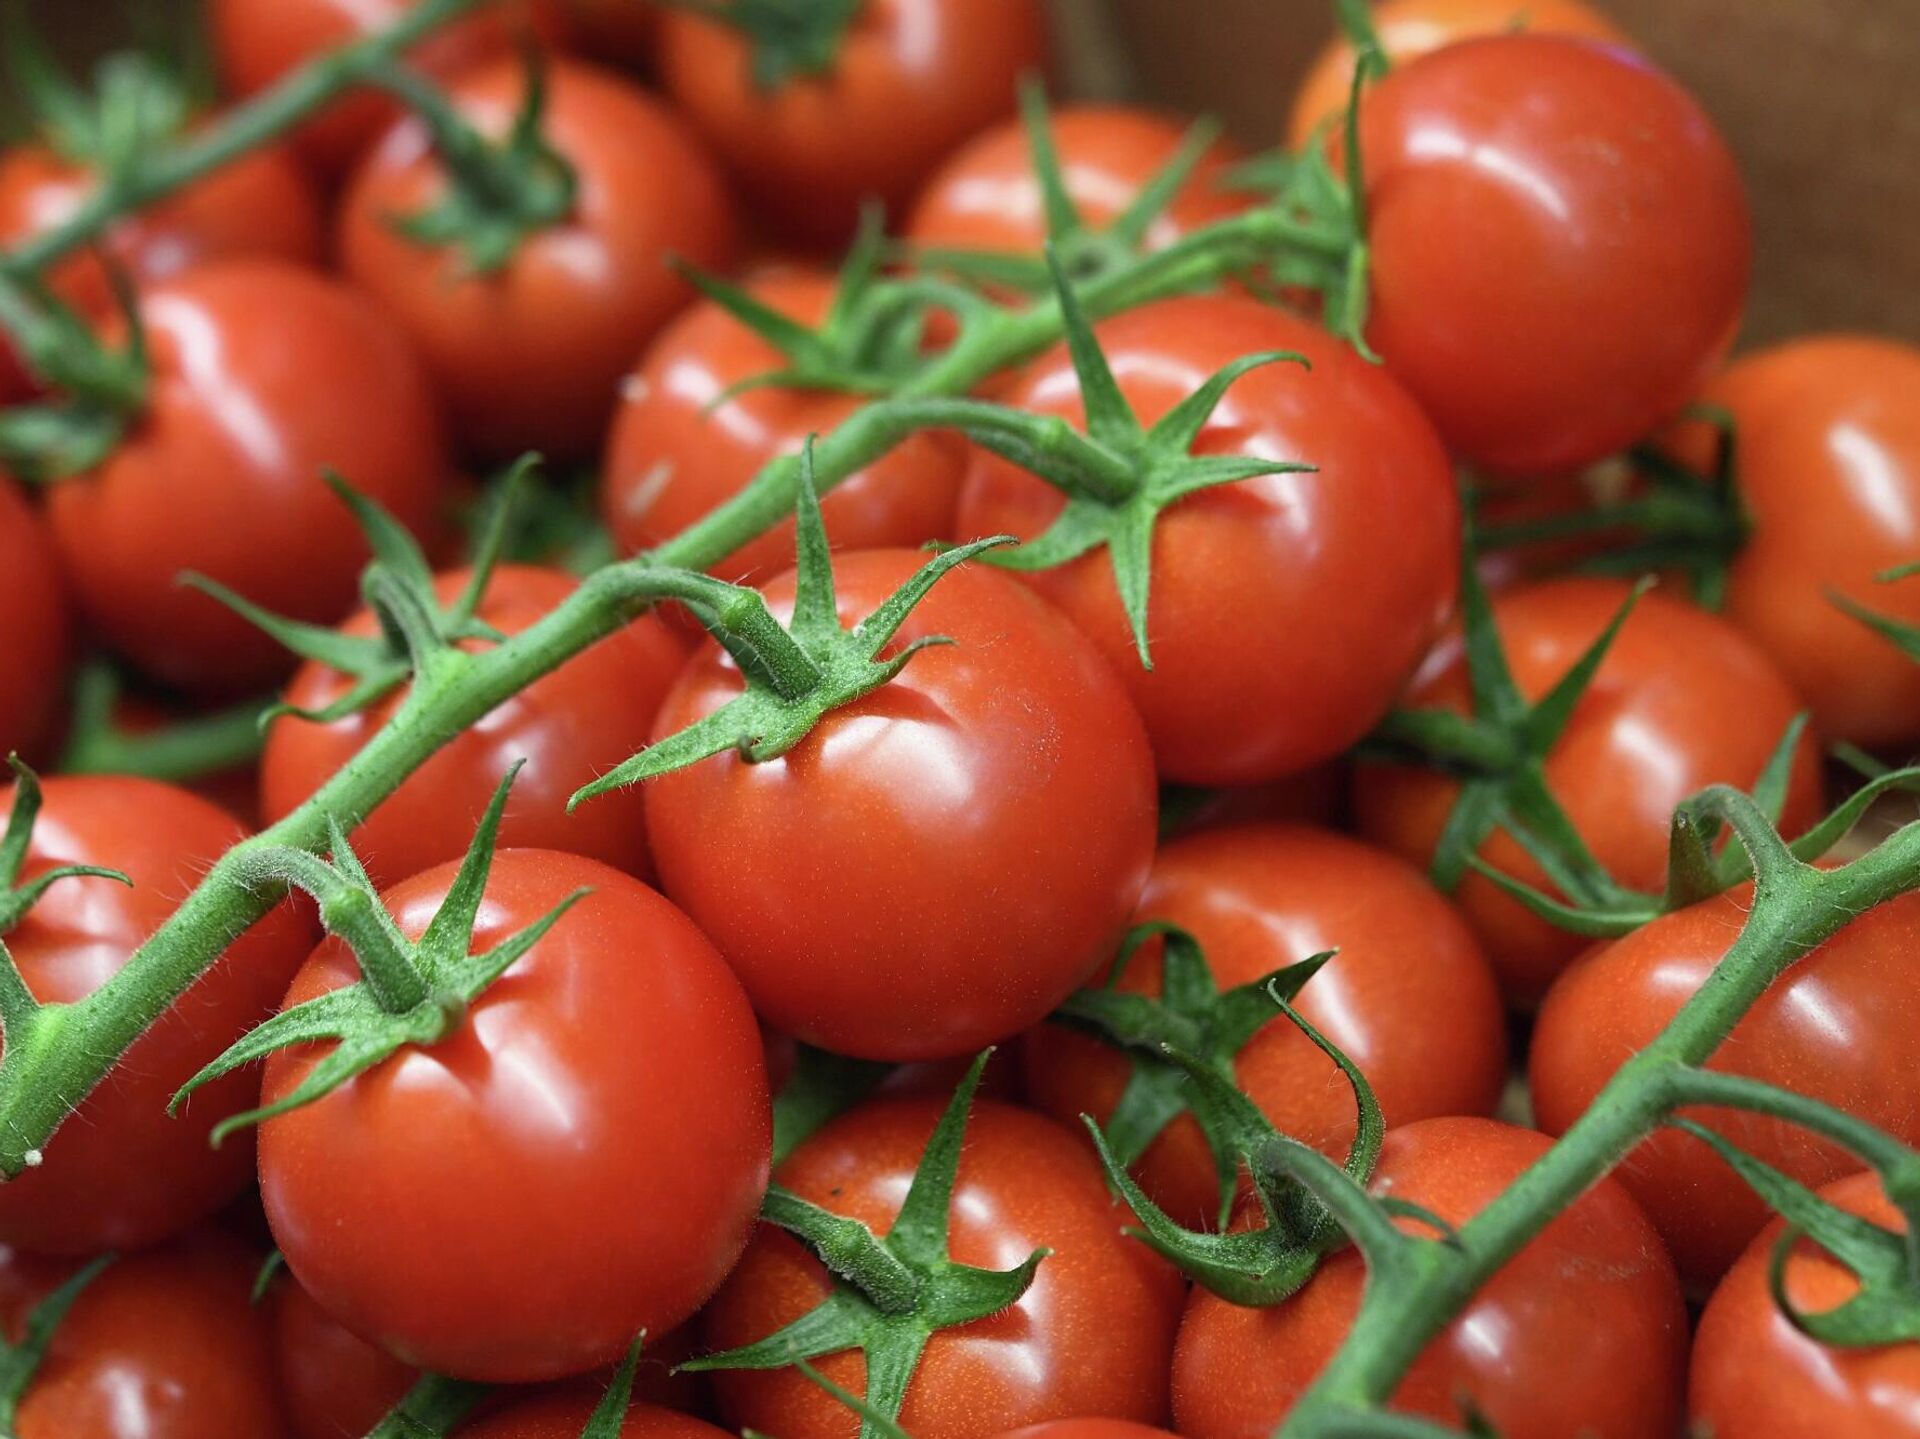 للطماطم فوائد عديدة: مقاومة التجاعيد وعلامات الشيخوخة